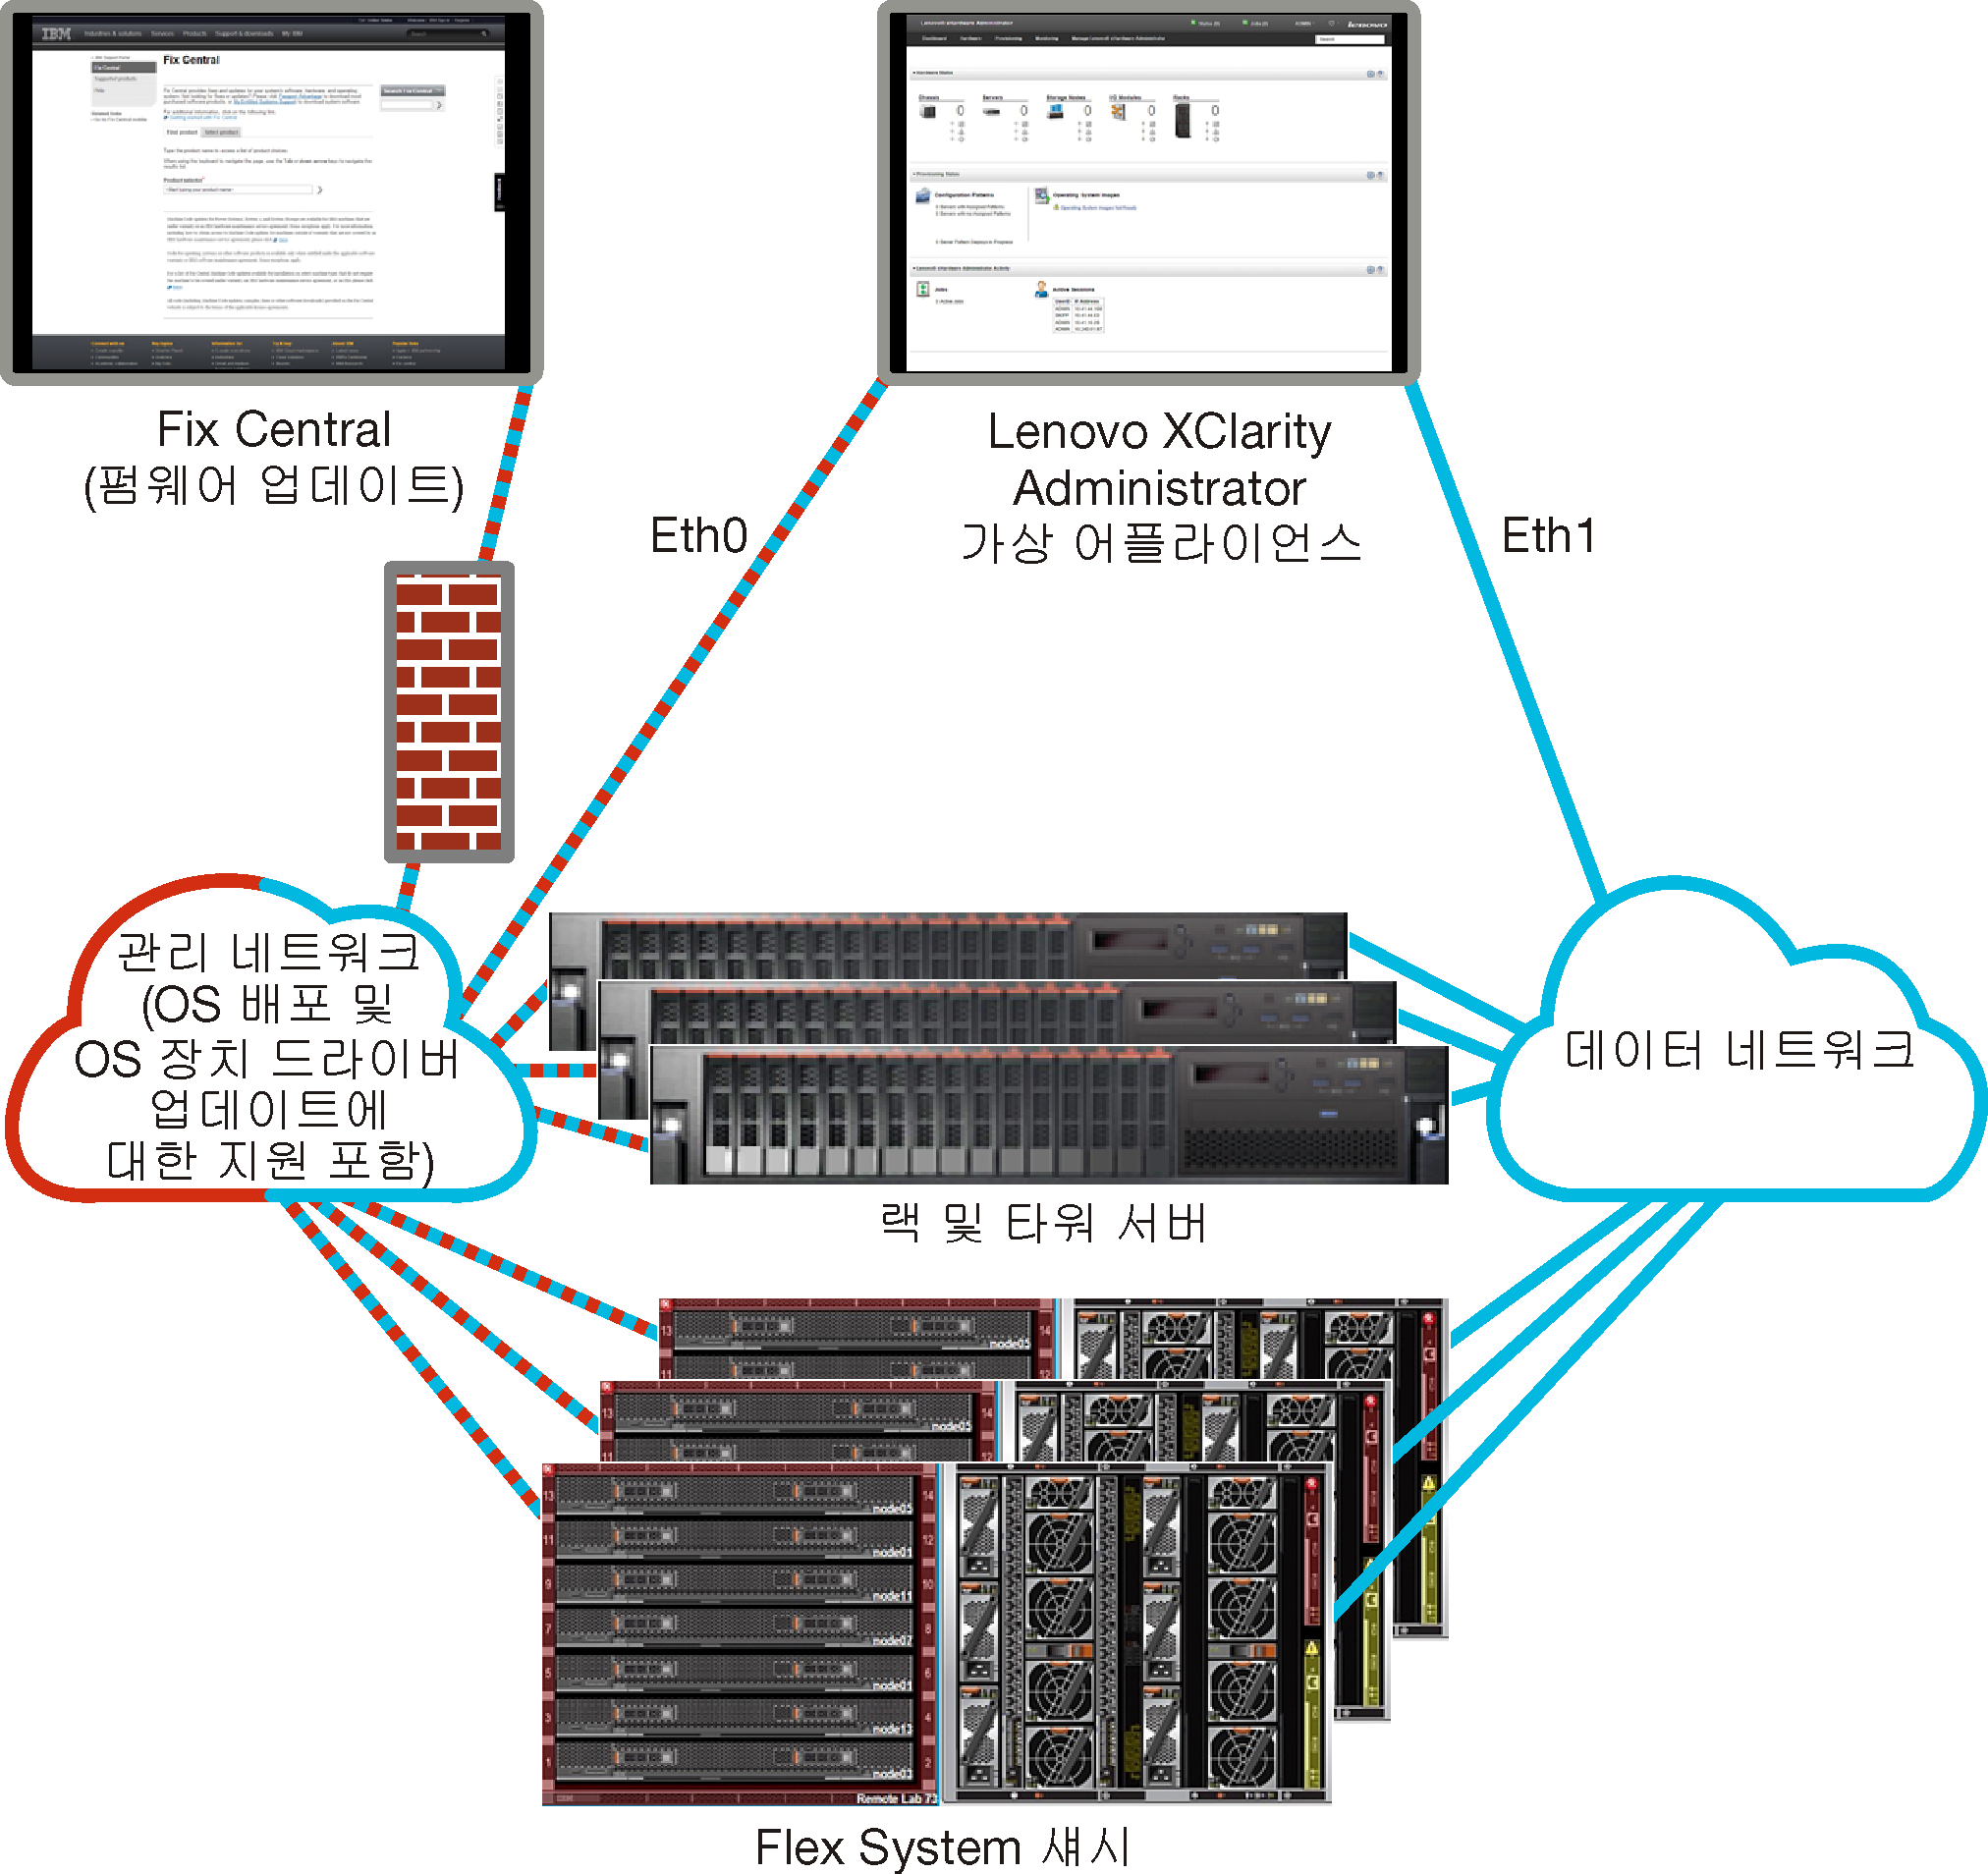 분리된 데이터 및 관리 네트워크의 상위 레벨 보기를 표시하는 그래픽입니다. 운영 체제 배포 네트워크는 관리 네트워크의 일부로 설정됩니다.